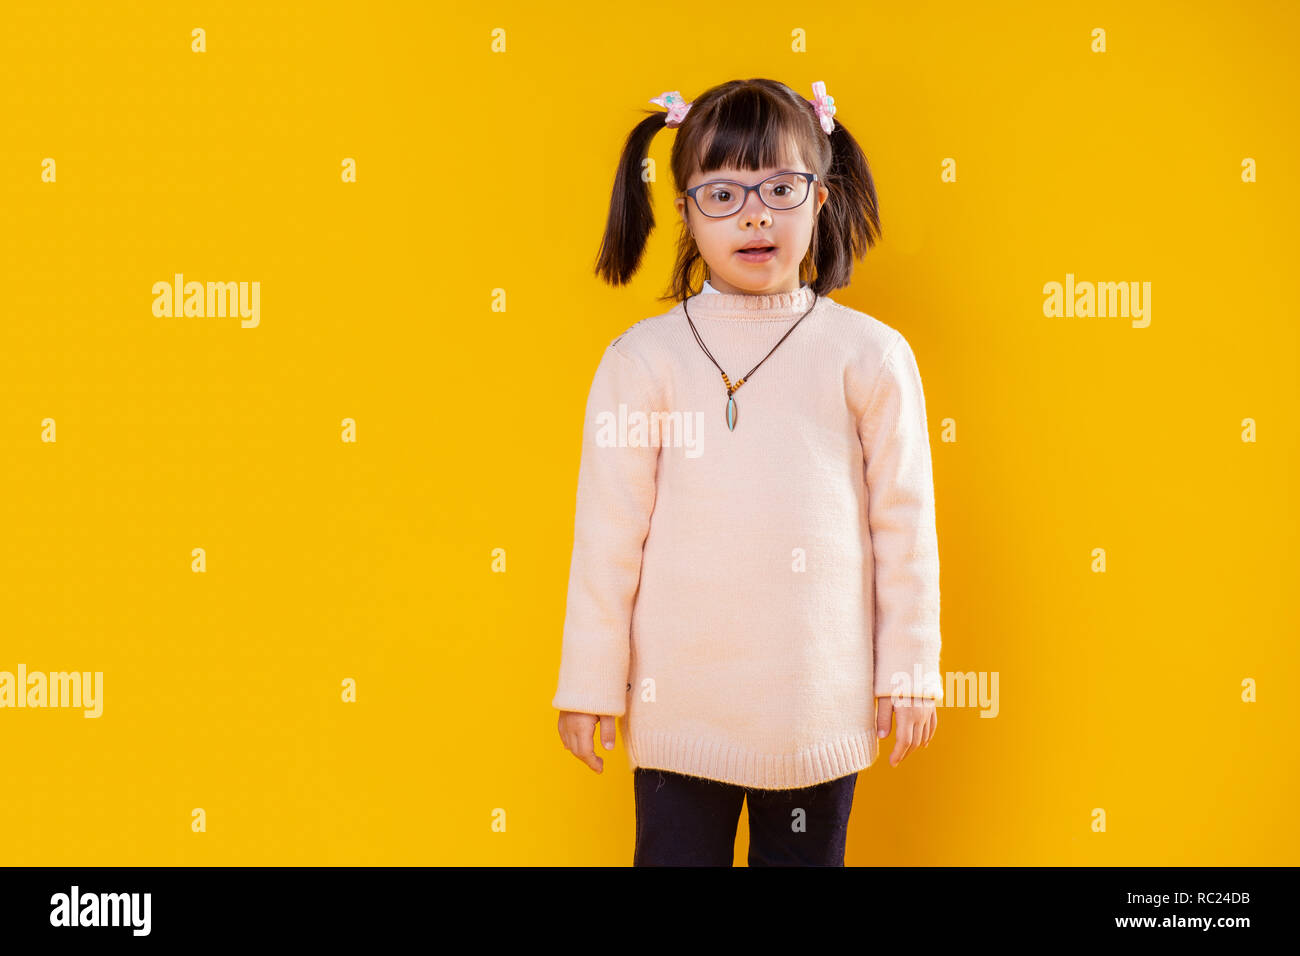 Neugierig kleines Mädchen mit Down-syndrom gegen orange Wand posieren Stockfoto